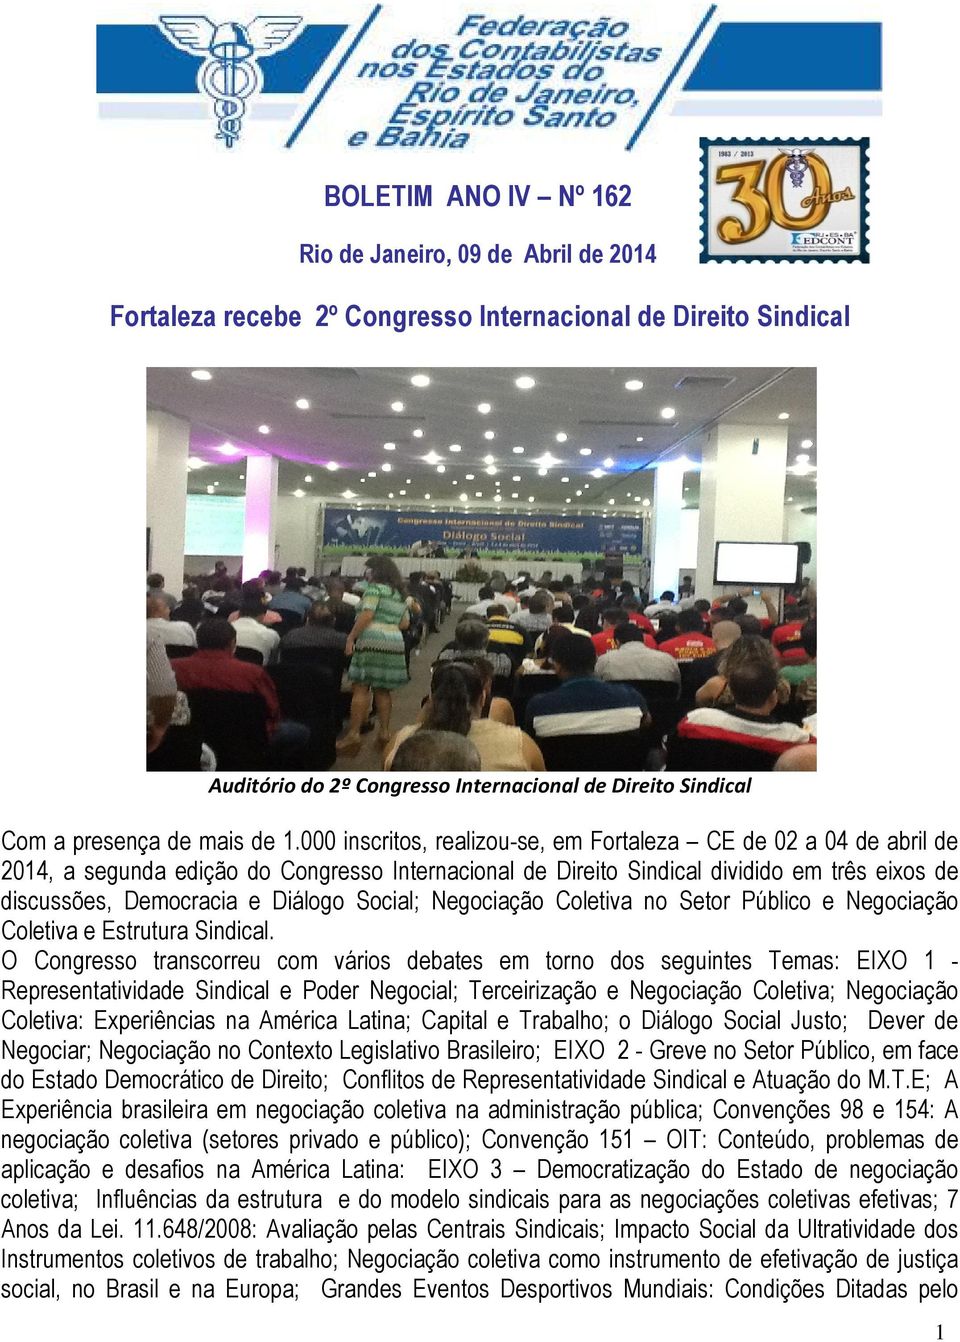 000 inscritos, realizou-se, em Fortaleza CE de 02 a 04 de abril de 2014, a segunda edição do Congresso Internacional de Direito Sindical dividido em três eixos de discussões, Democracia e Diálogo